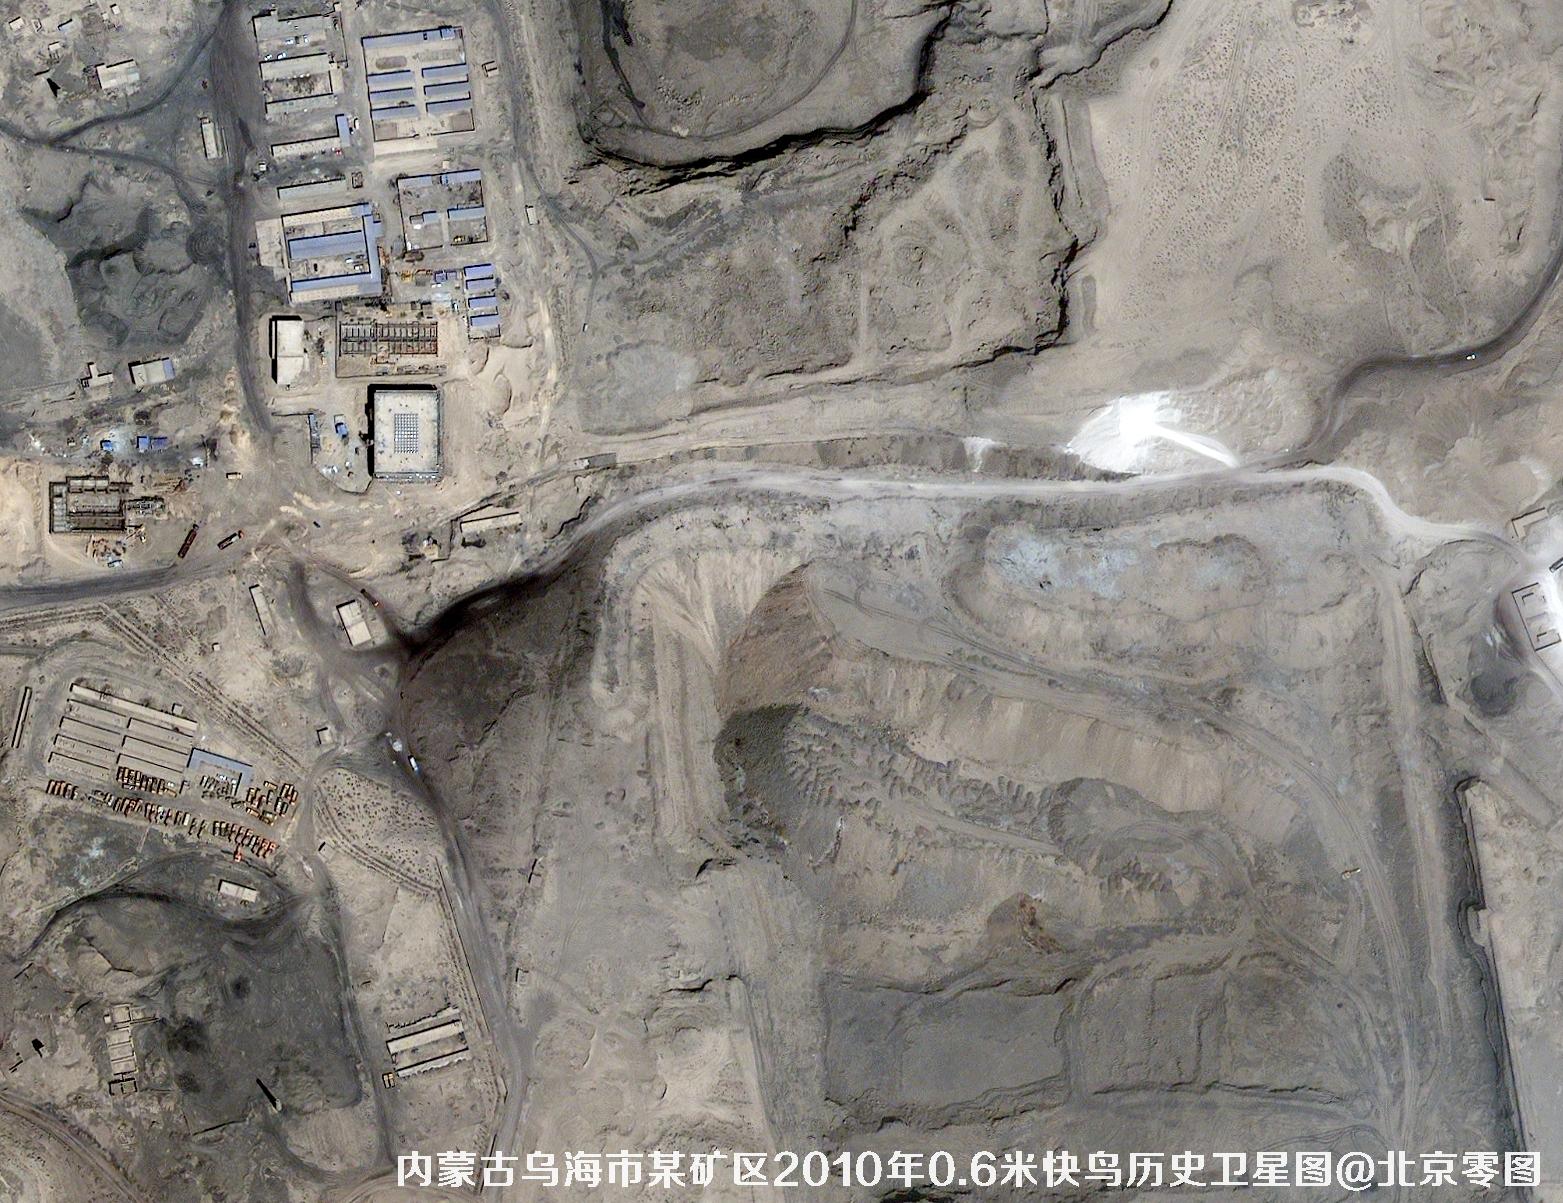 内蒙古乌海市某矿区2010年0.6米快鸟卫星图